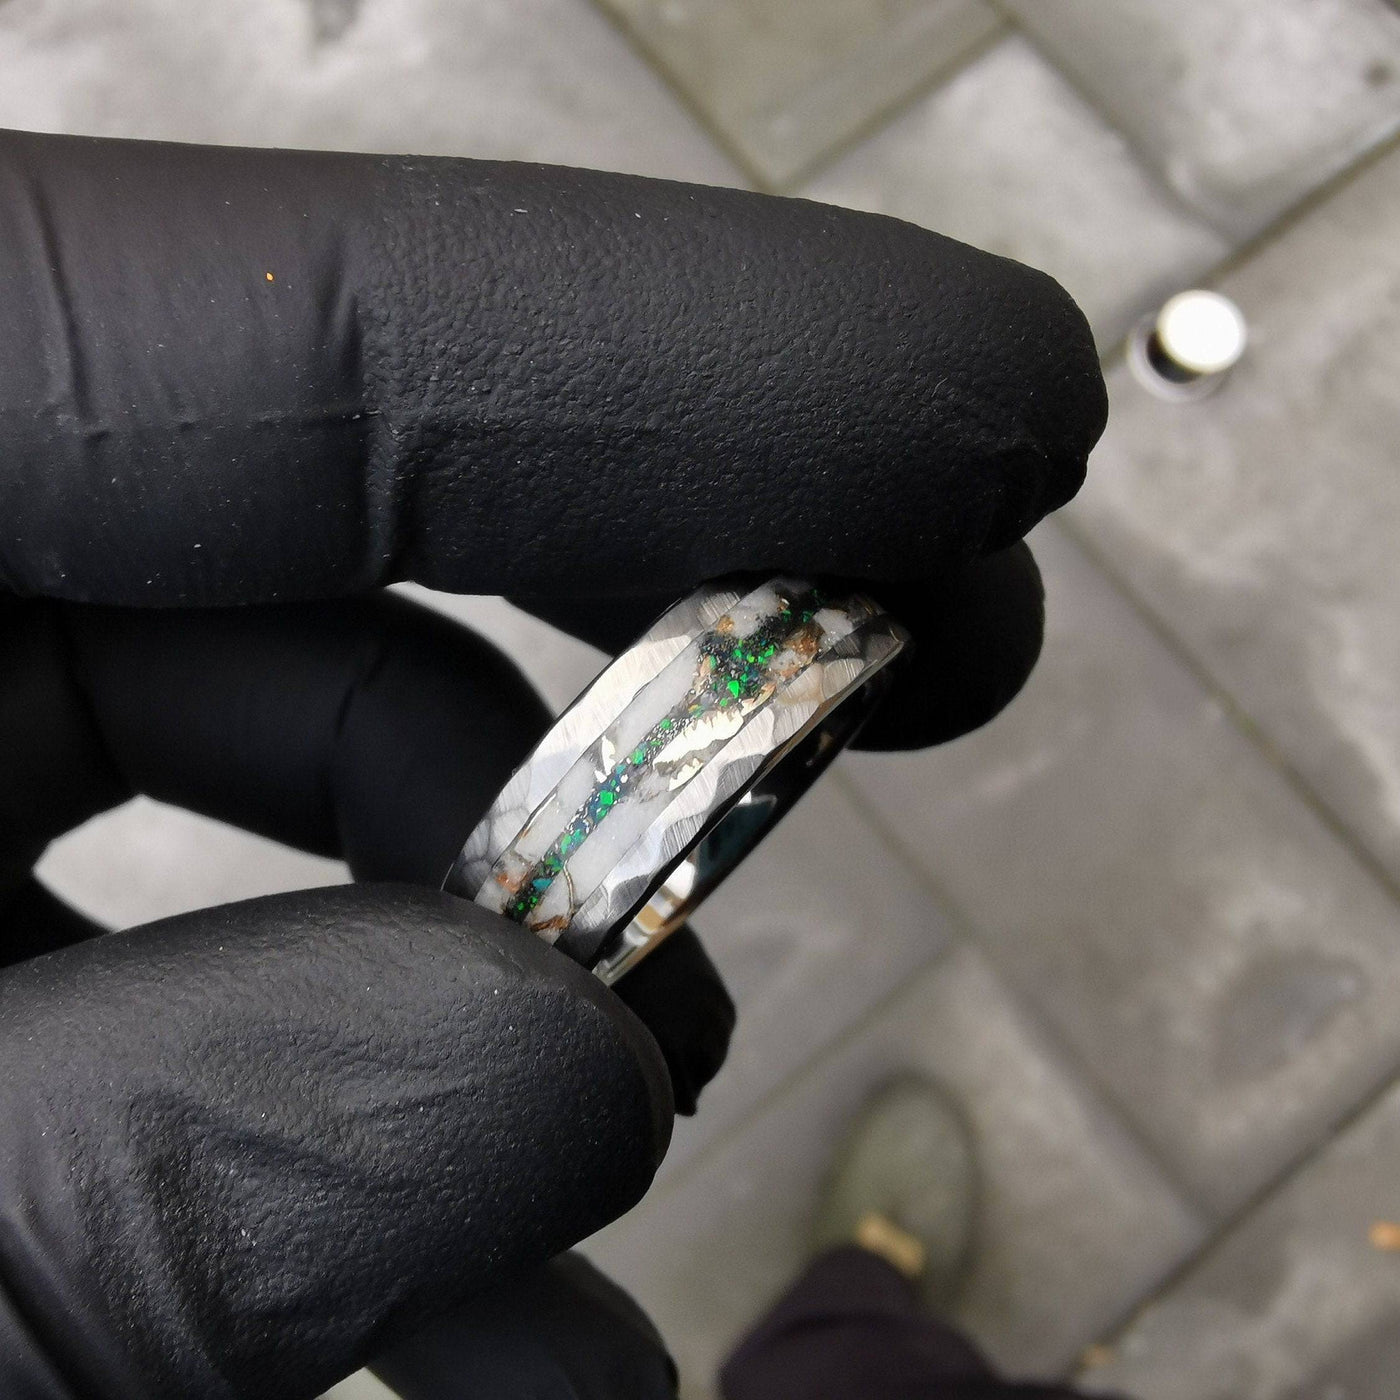 Black Opal Mokume Game & Meteorite Tungsten Ring